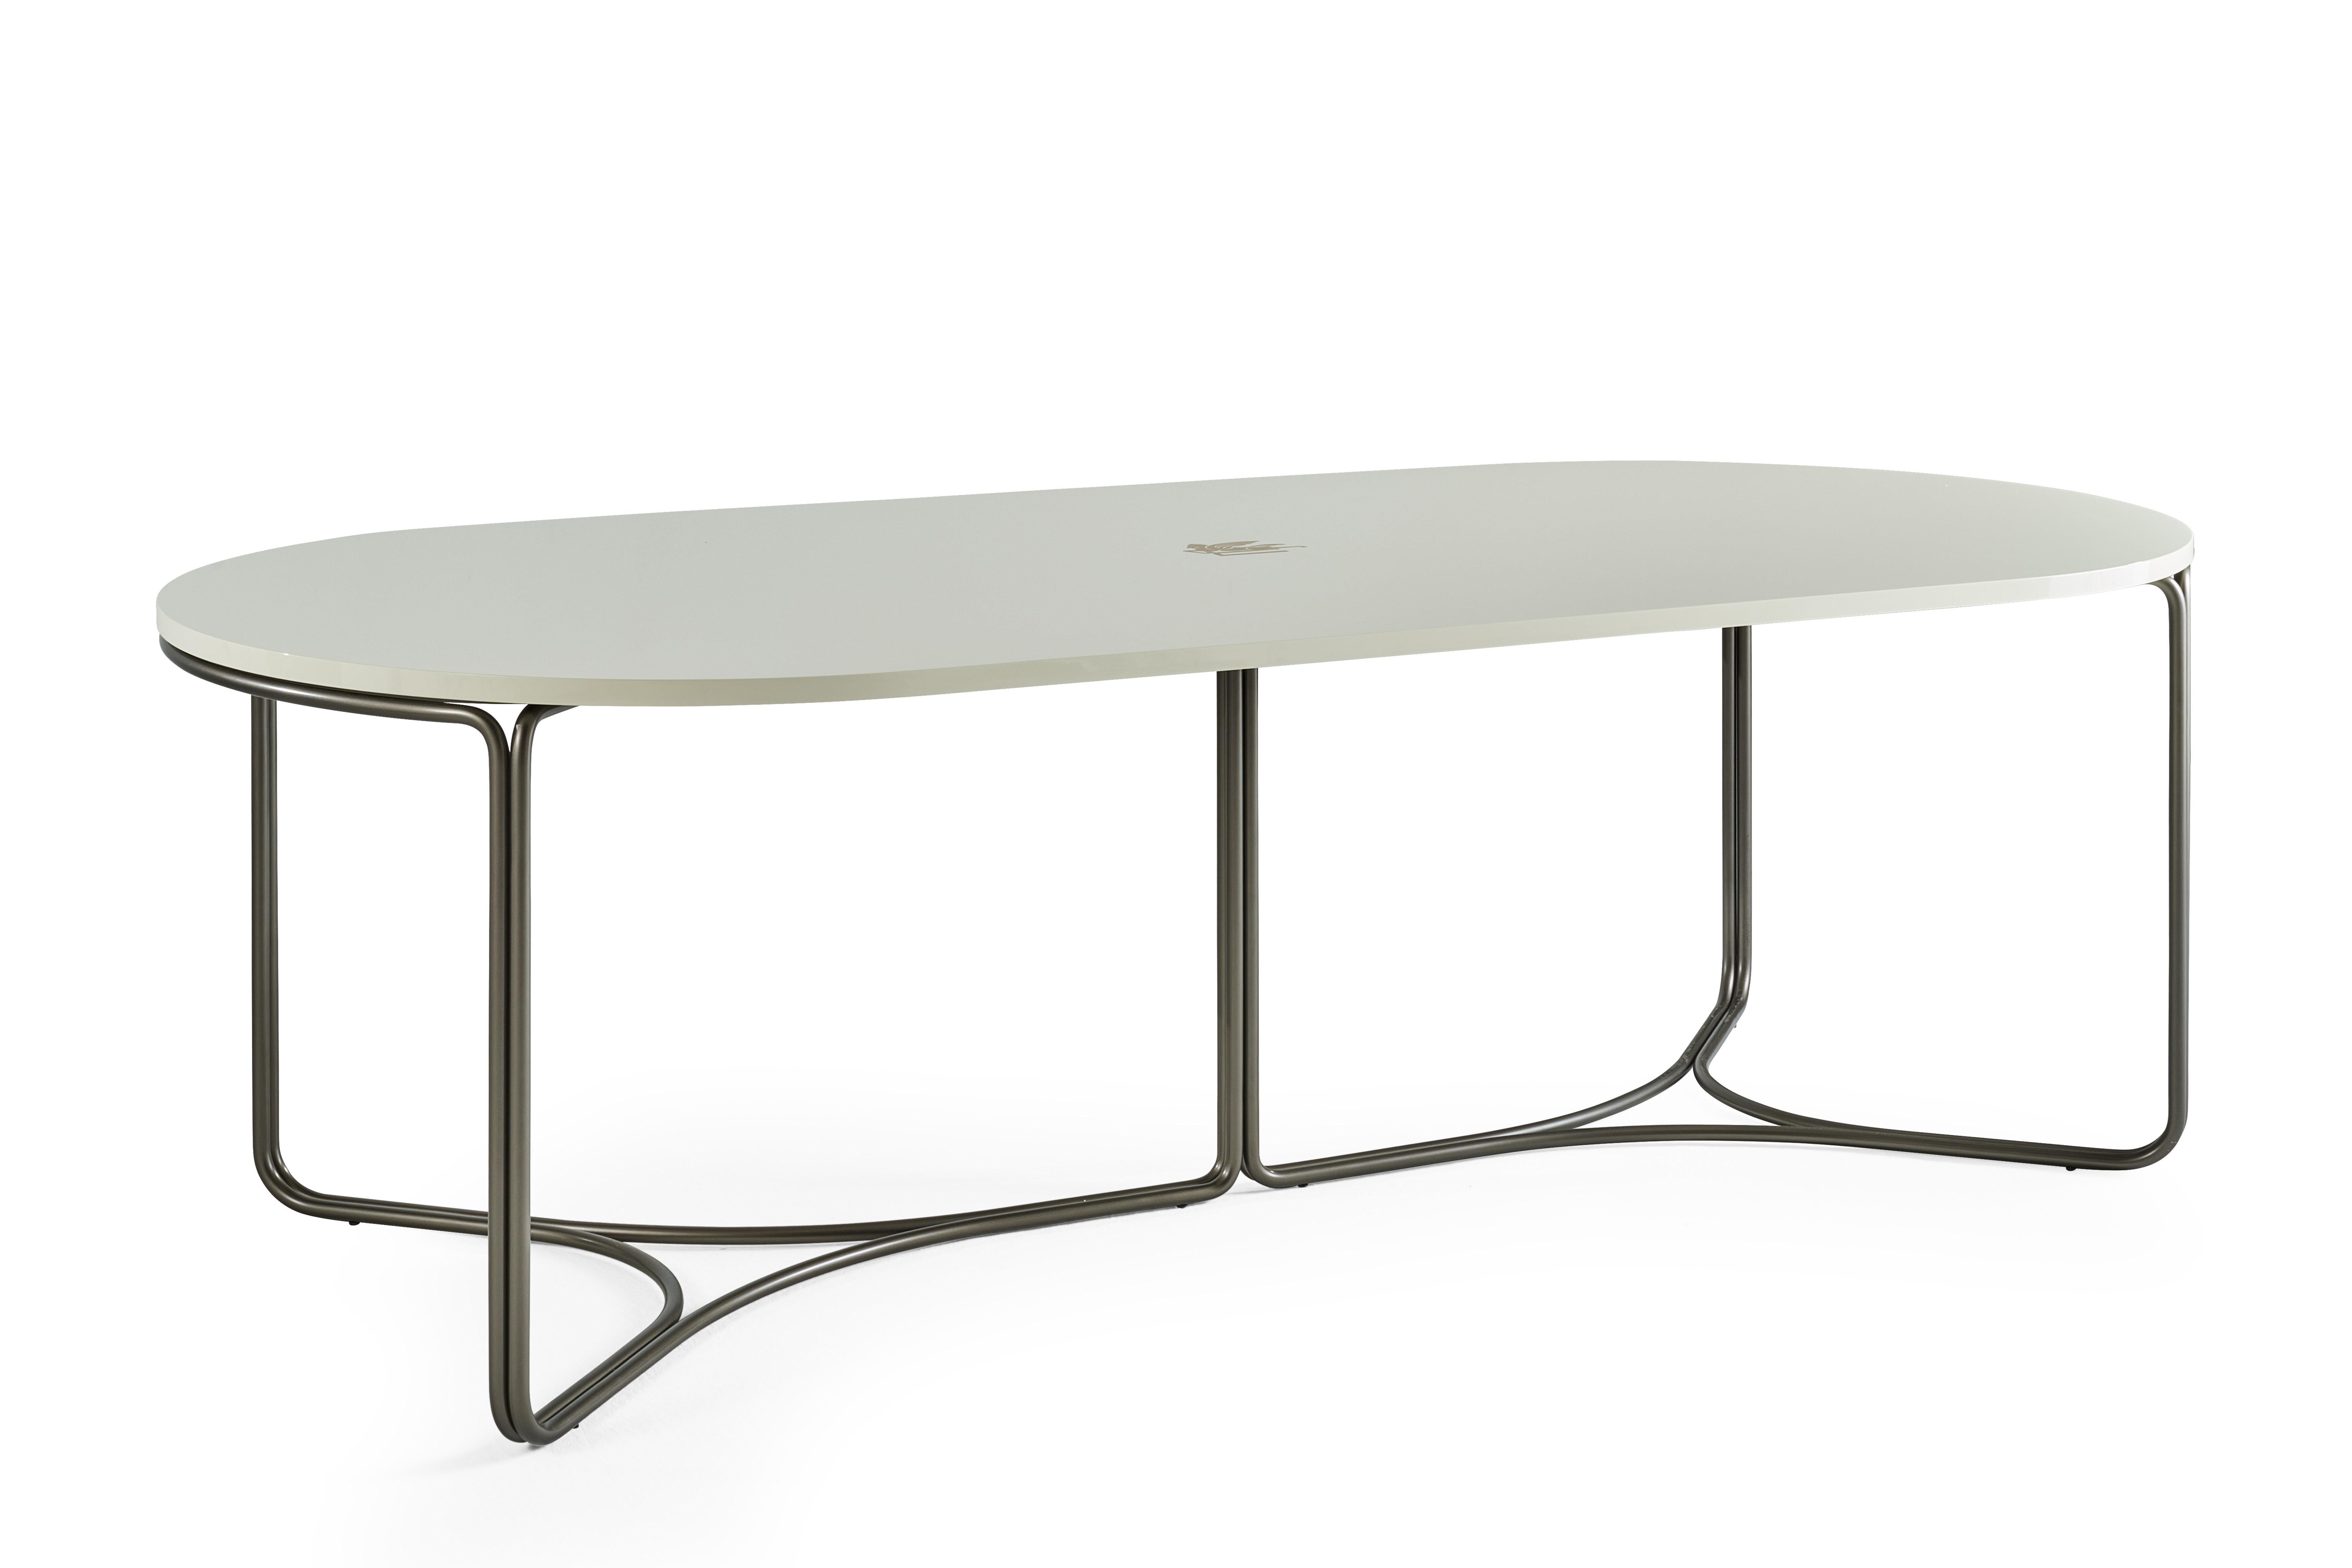 Lagoon est une table de salle à manger à la coupe contemporaine, caractérisée par une structure minimaliste composée de tubes métalliques courbés avec une finition bronze et un plateau avec une finition laquée brillante disponible en différentes